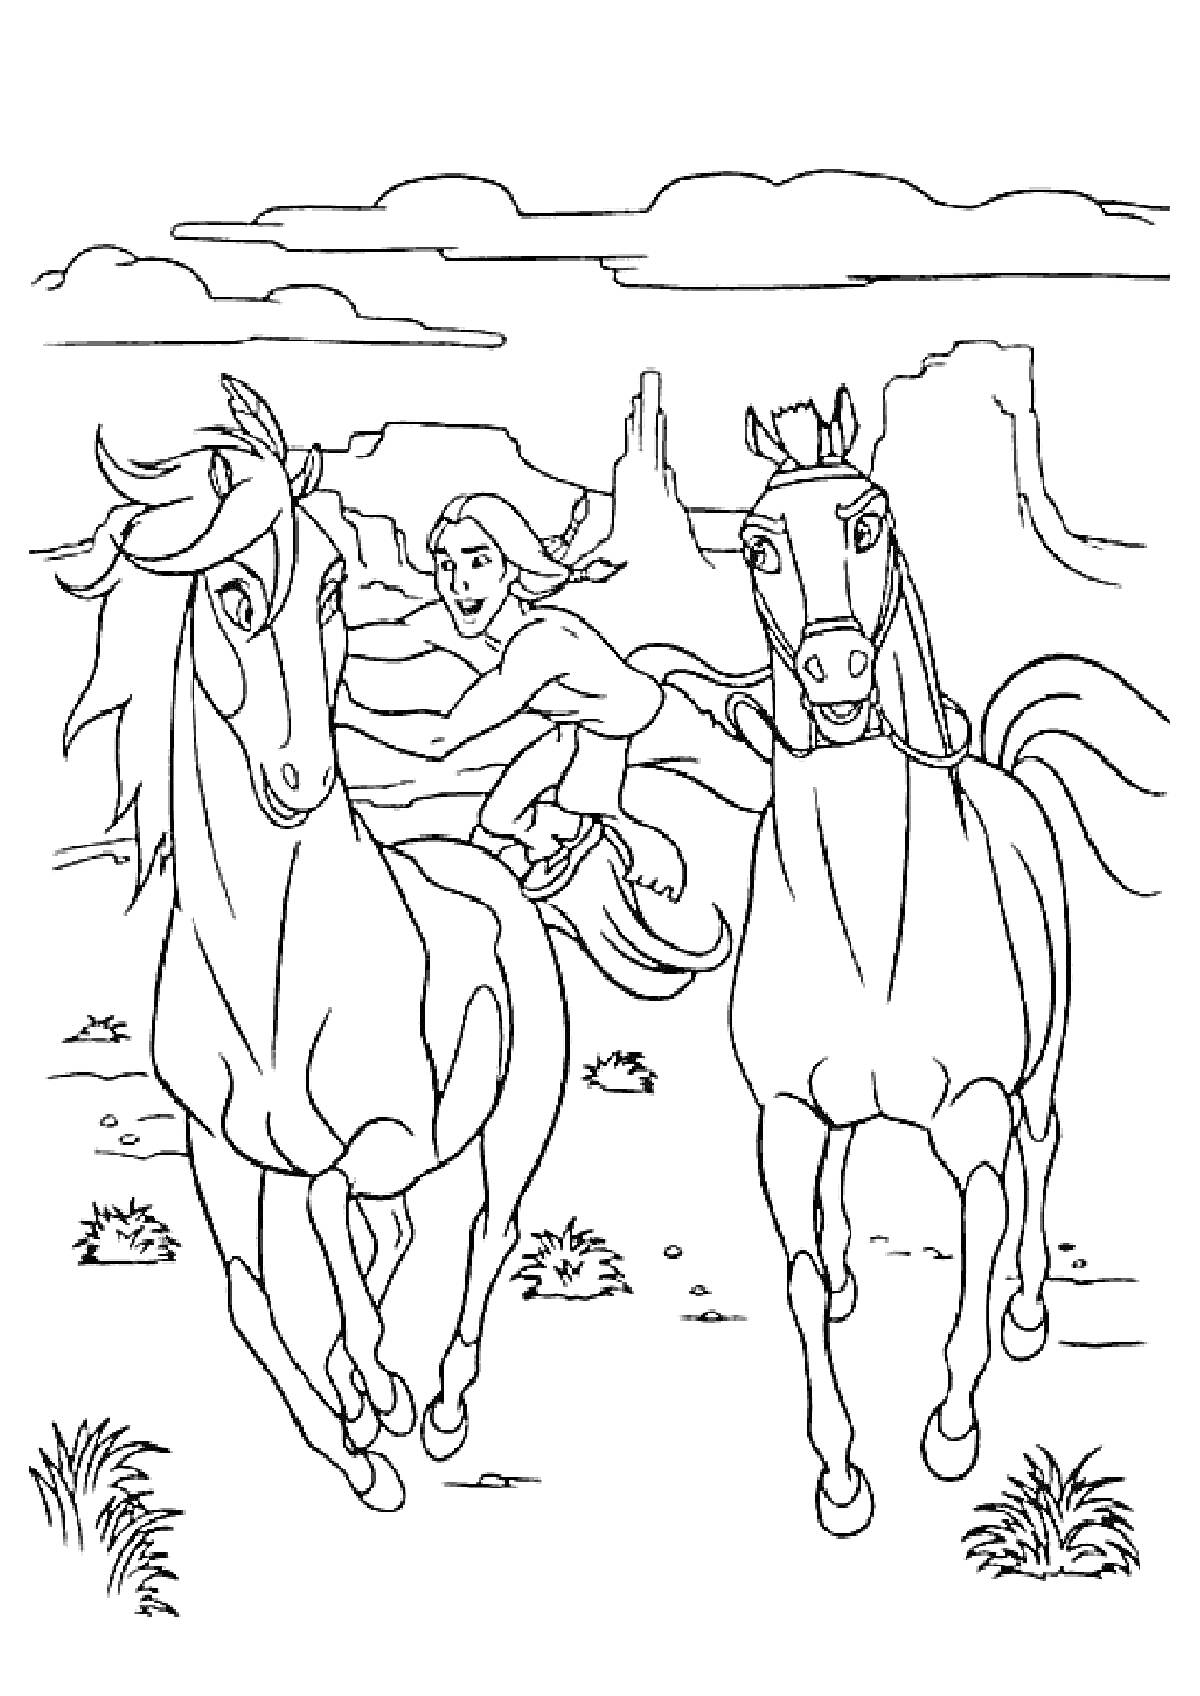 Всадник на лошади и еще одна лошадь на фоне пустынного пейзажа с горами и облаками